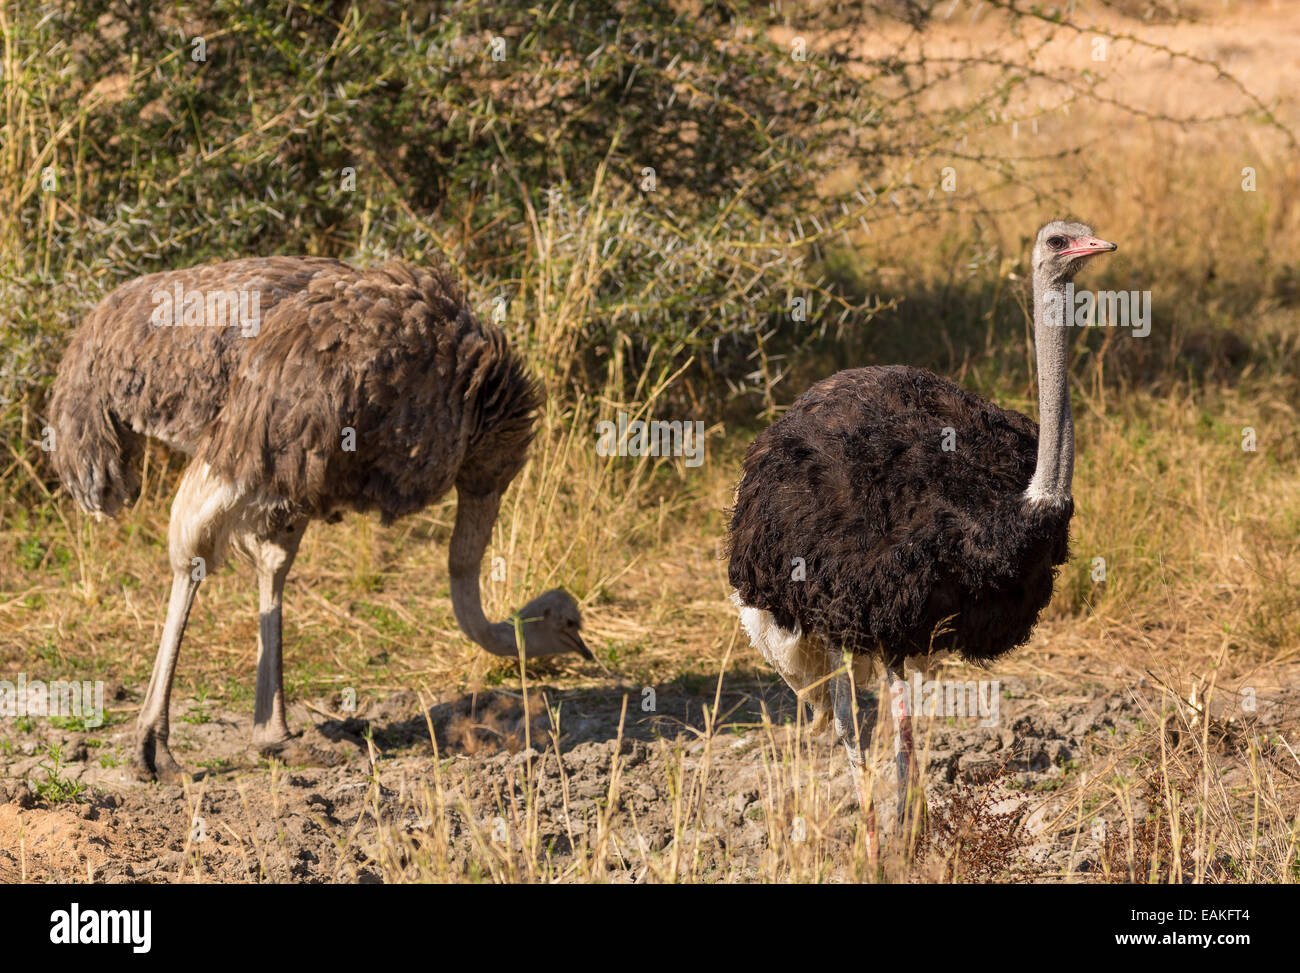 El Parque Nacional Kruger, Sudáfrica - avestruz común, una gran ave no voladora, Struthio camelus. Foto de stock